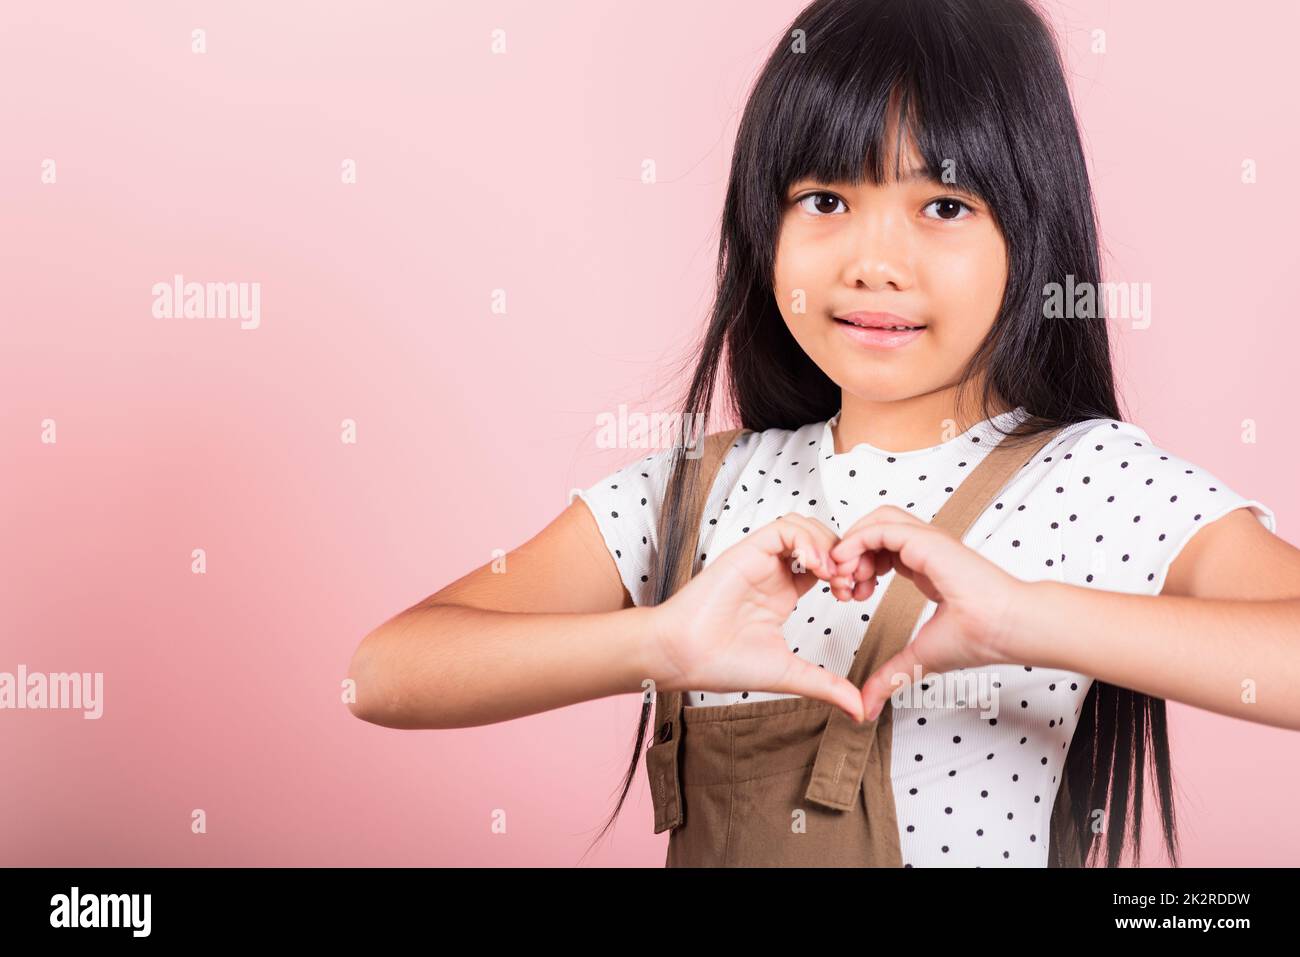 Petit enfant asiatique de 10 ans montrant un cœur Banque D'Images